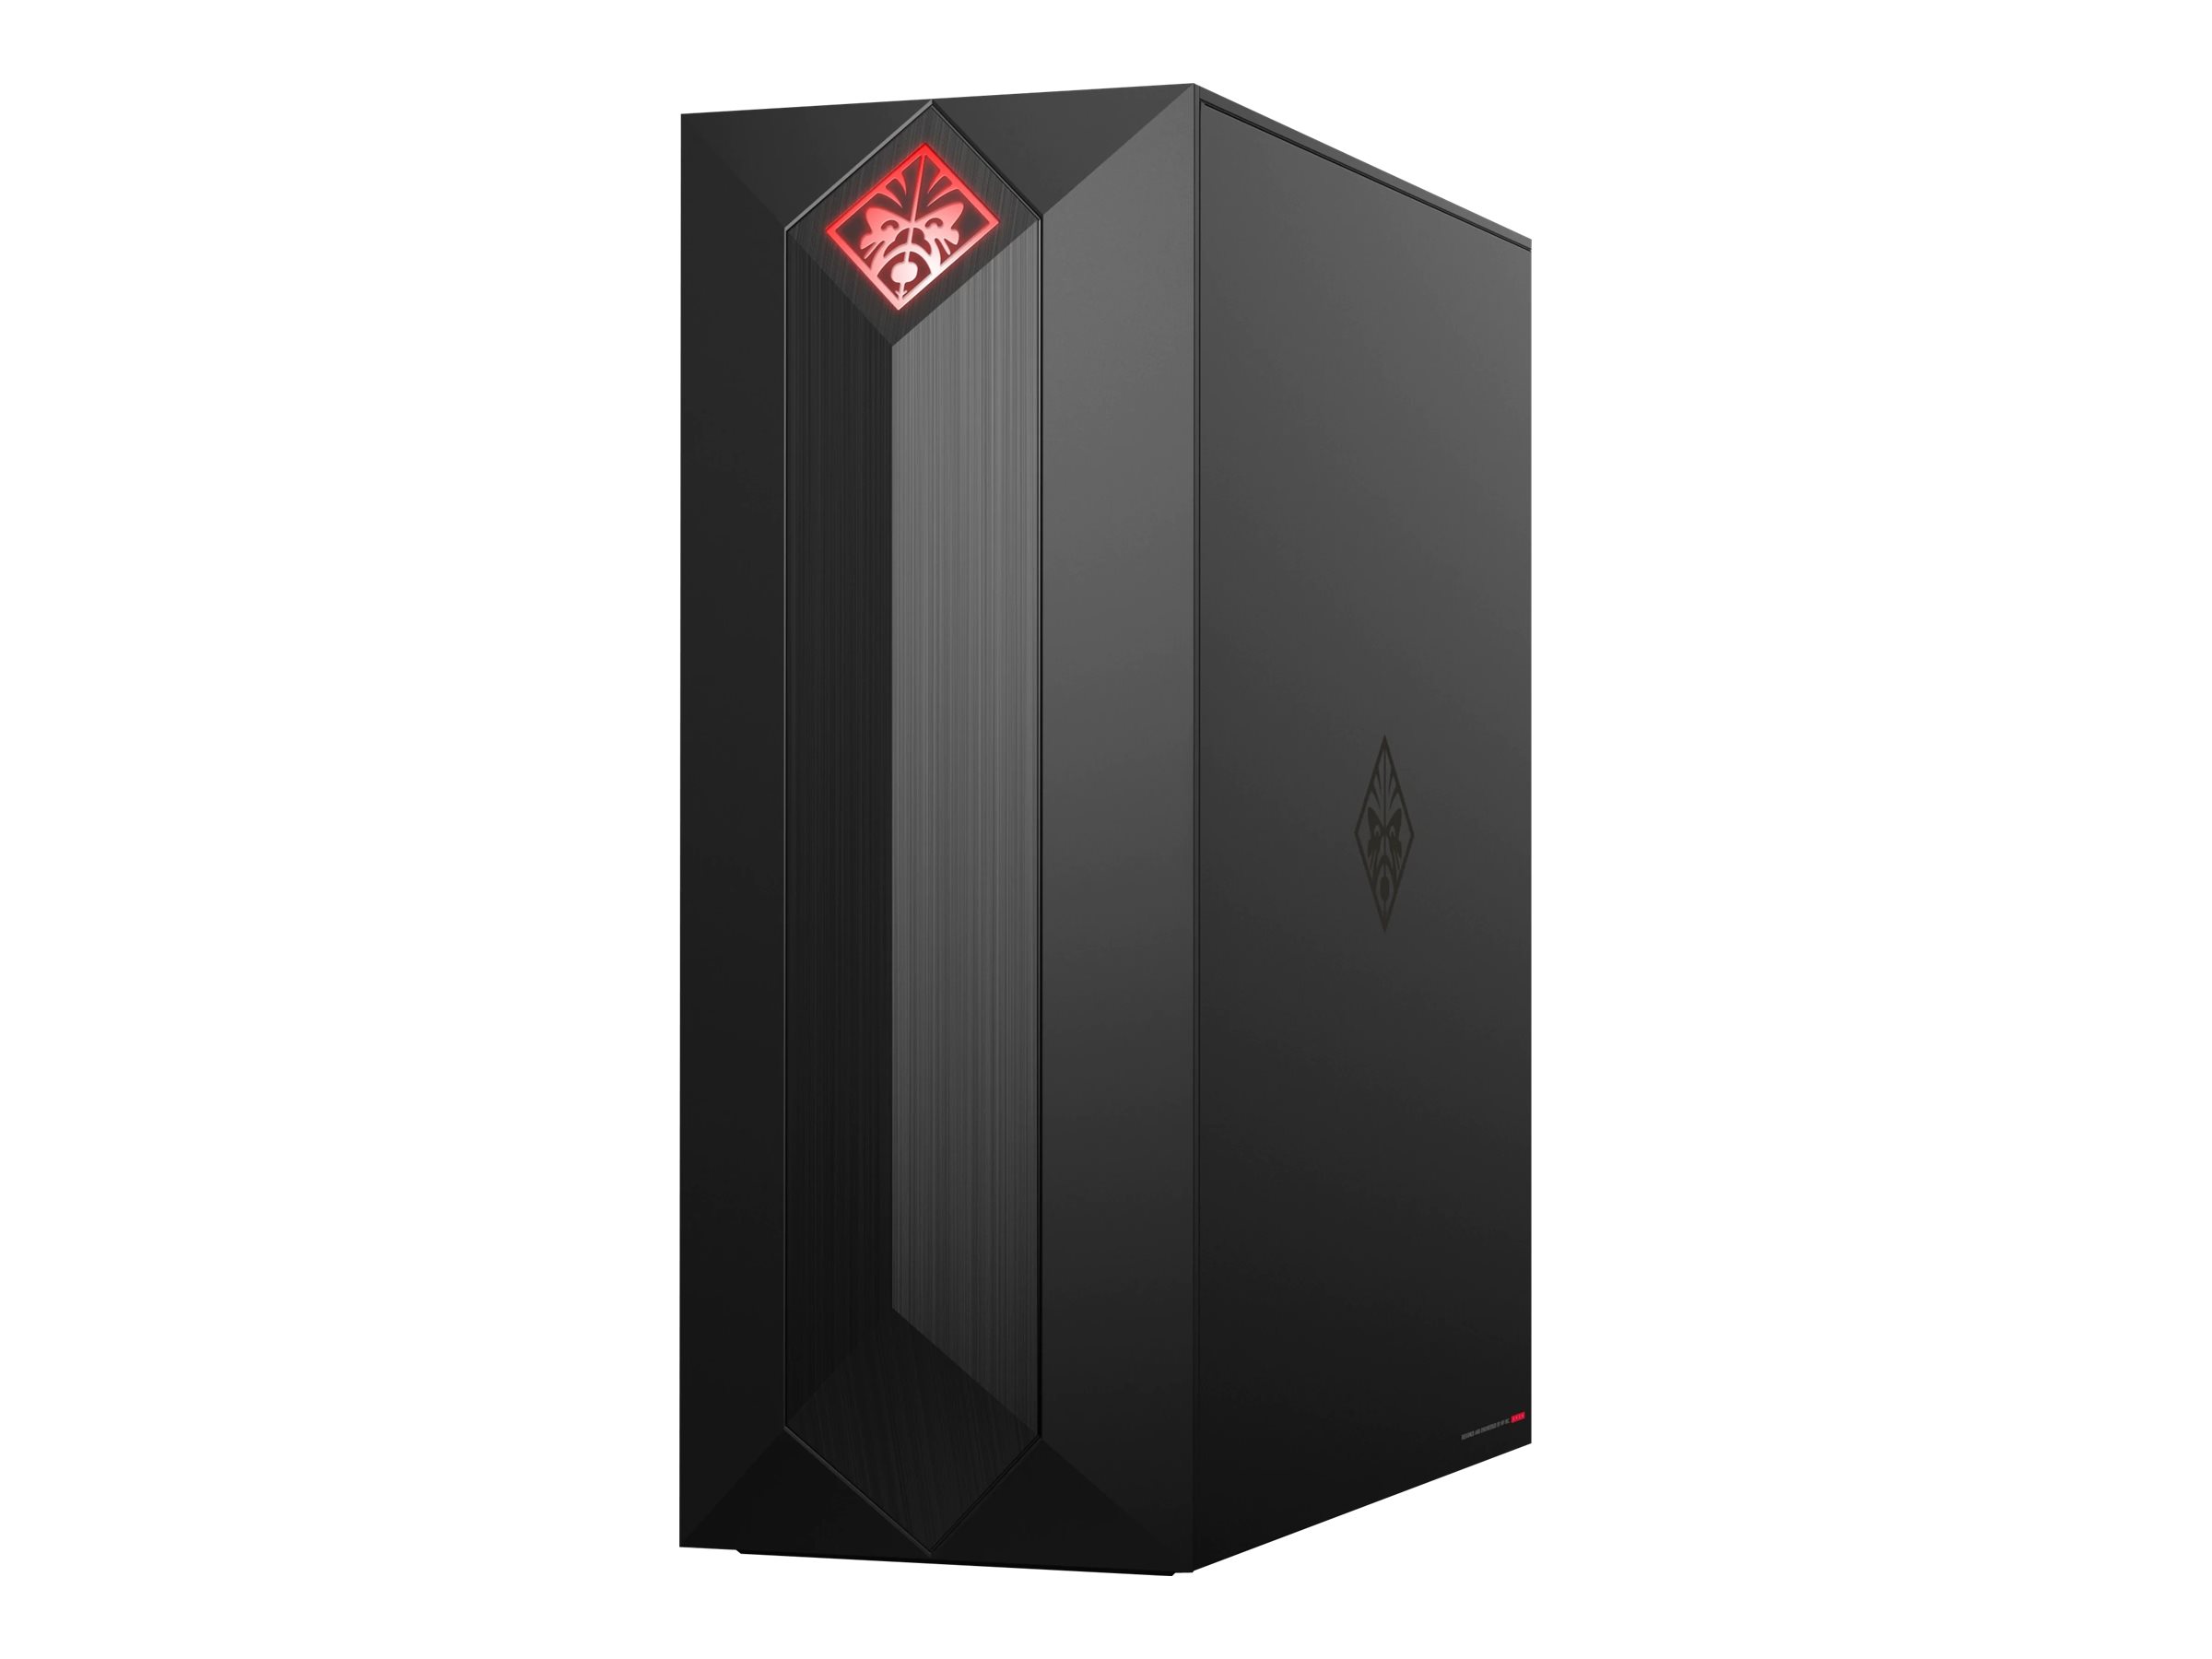 Meet the New HP® OMEN Obelisk Gaming Desktop